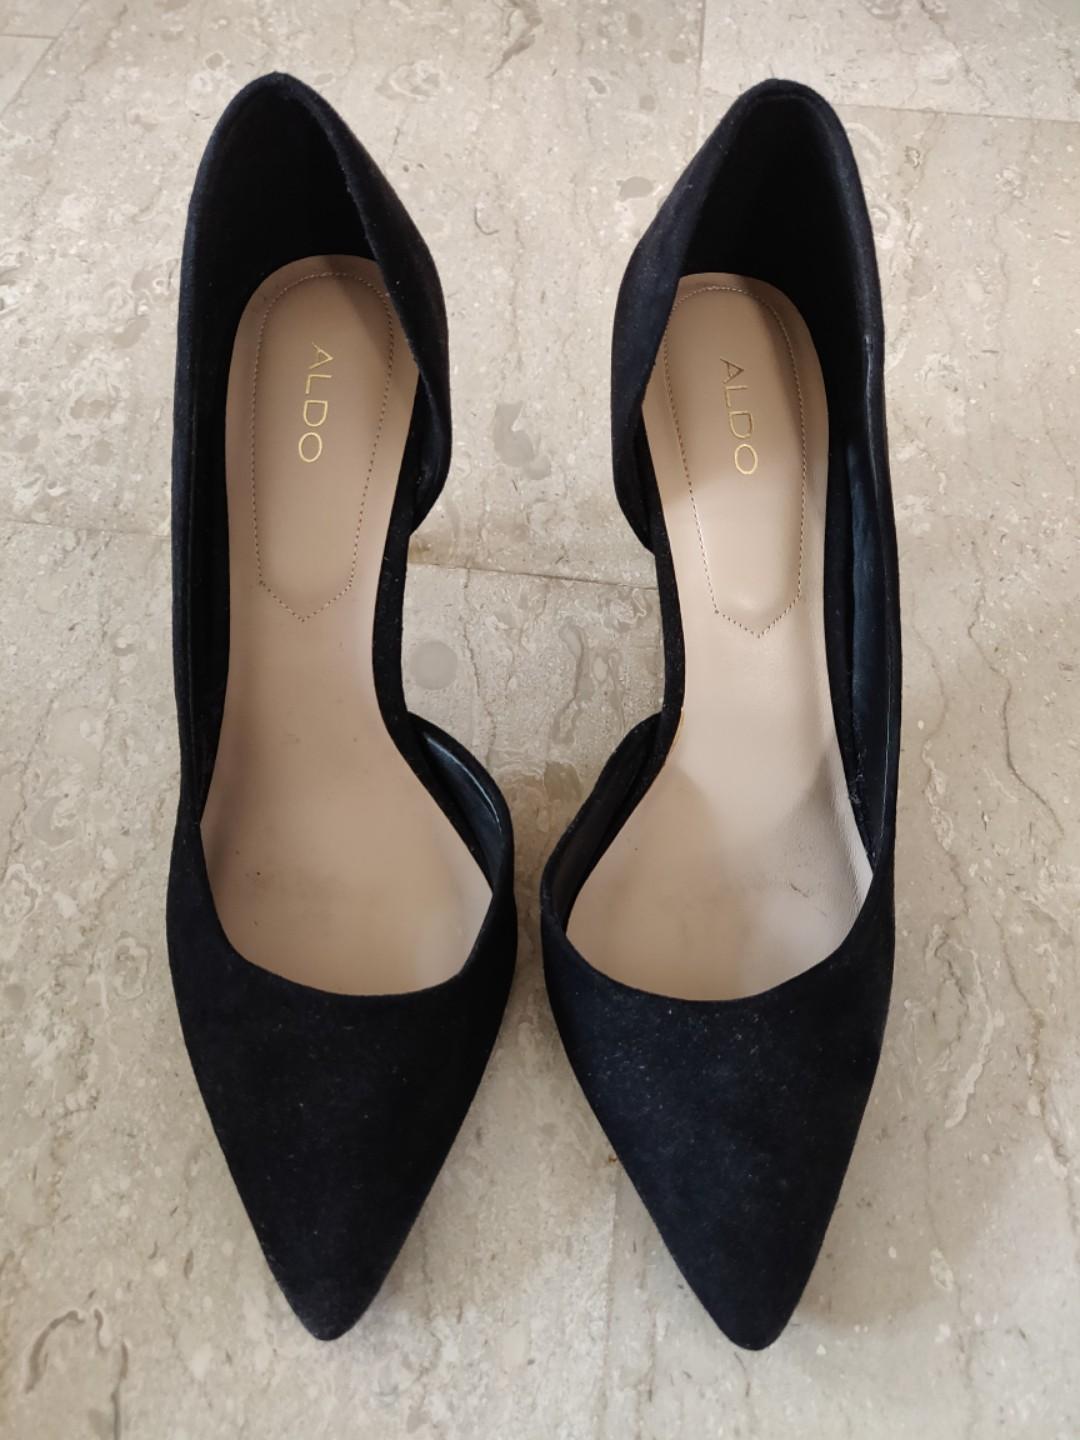 Aldo black heels / pumps, Women's 